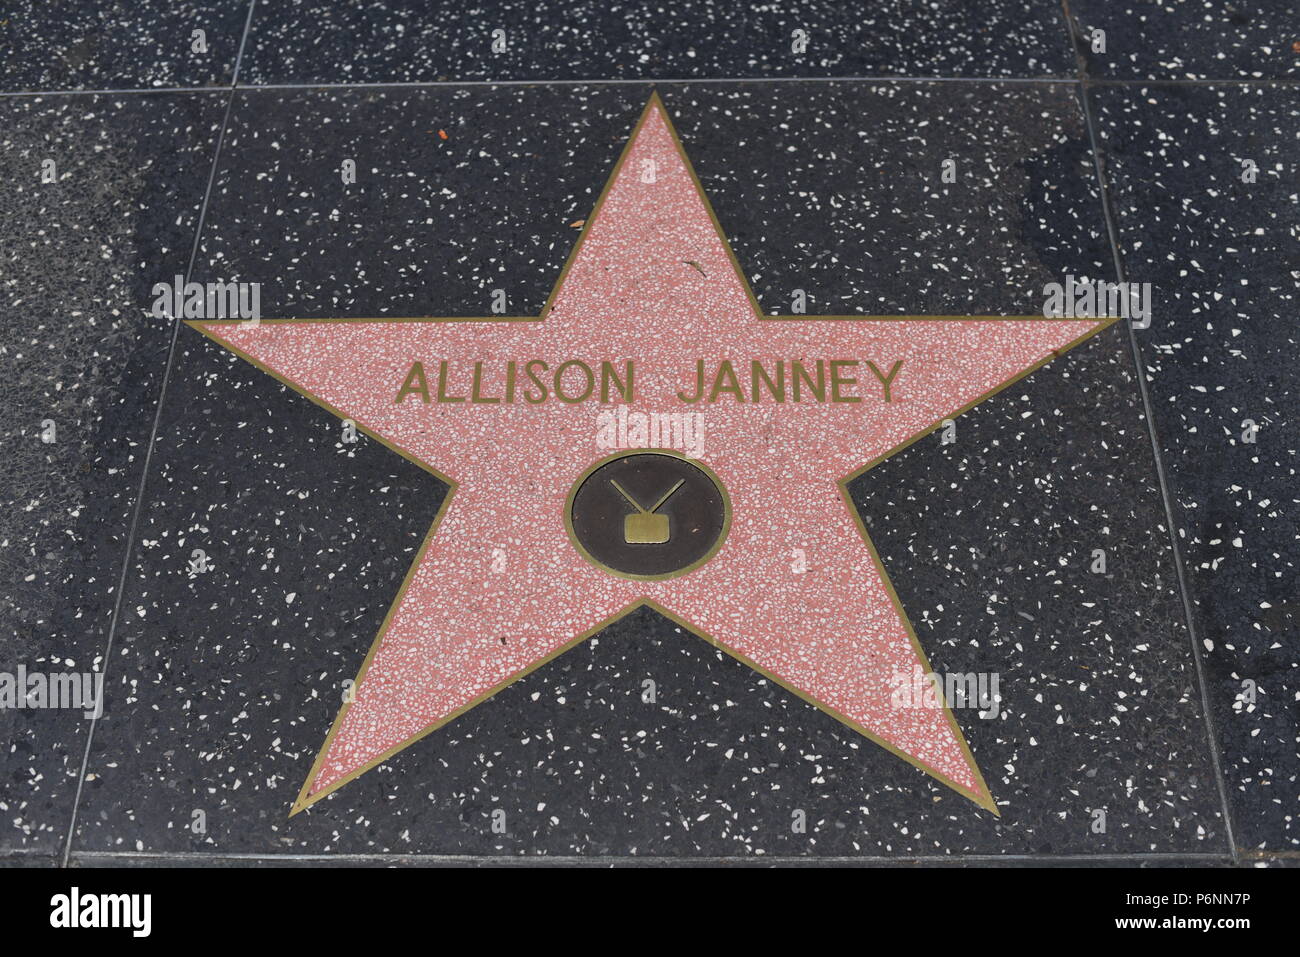 HOLLYWOOD, CA - 29 Giugno: Allison Janney stella sulla Hollywood Walk of Fame in Hollywood, la California il 29 giugno 2018. Foto Stock